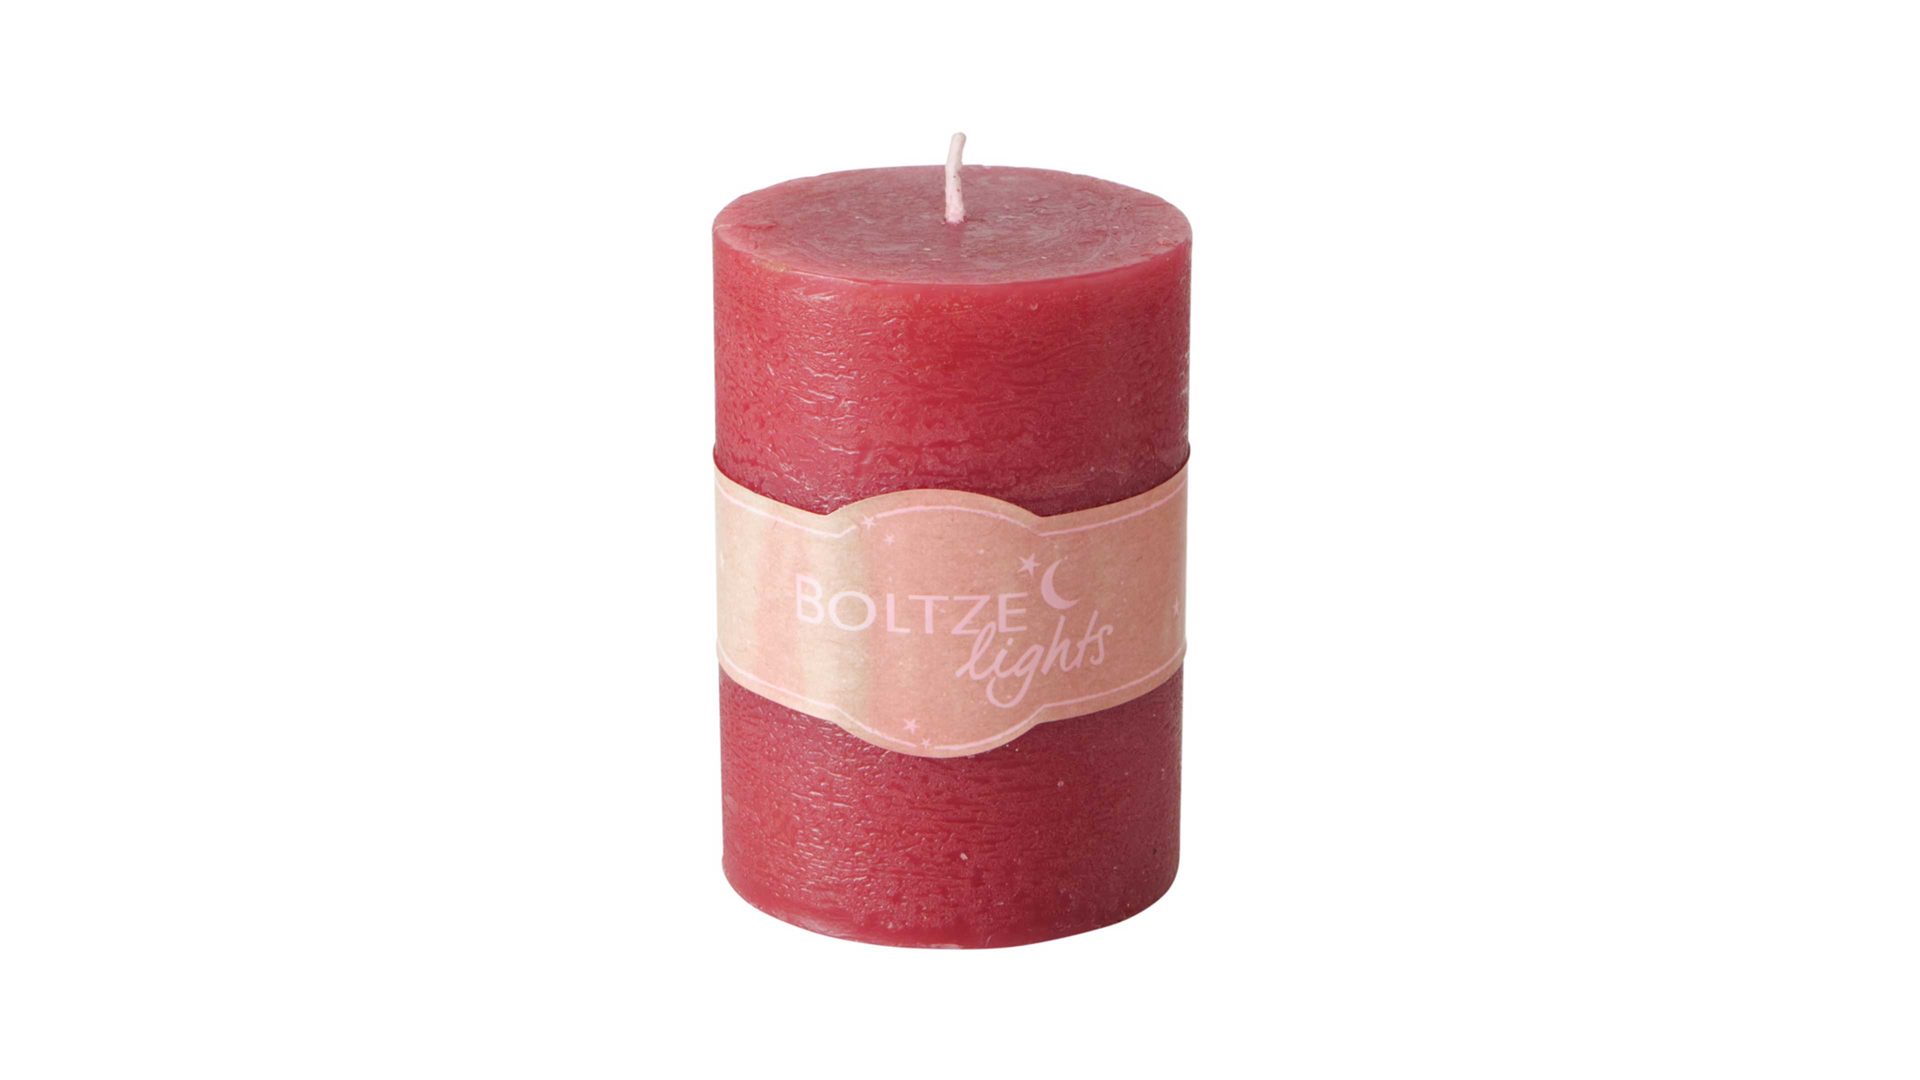 Kerze Boltze aus Wachs in Rot Stumpenkerze Rosi Rot – Höhe ca. 10 cm